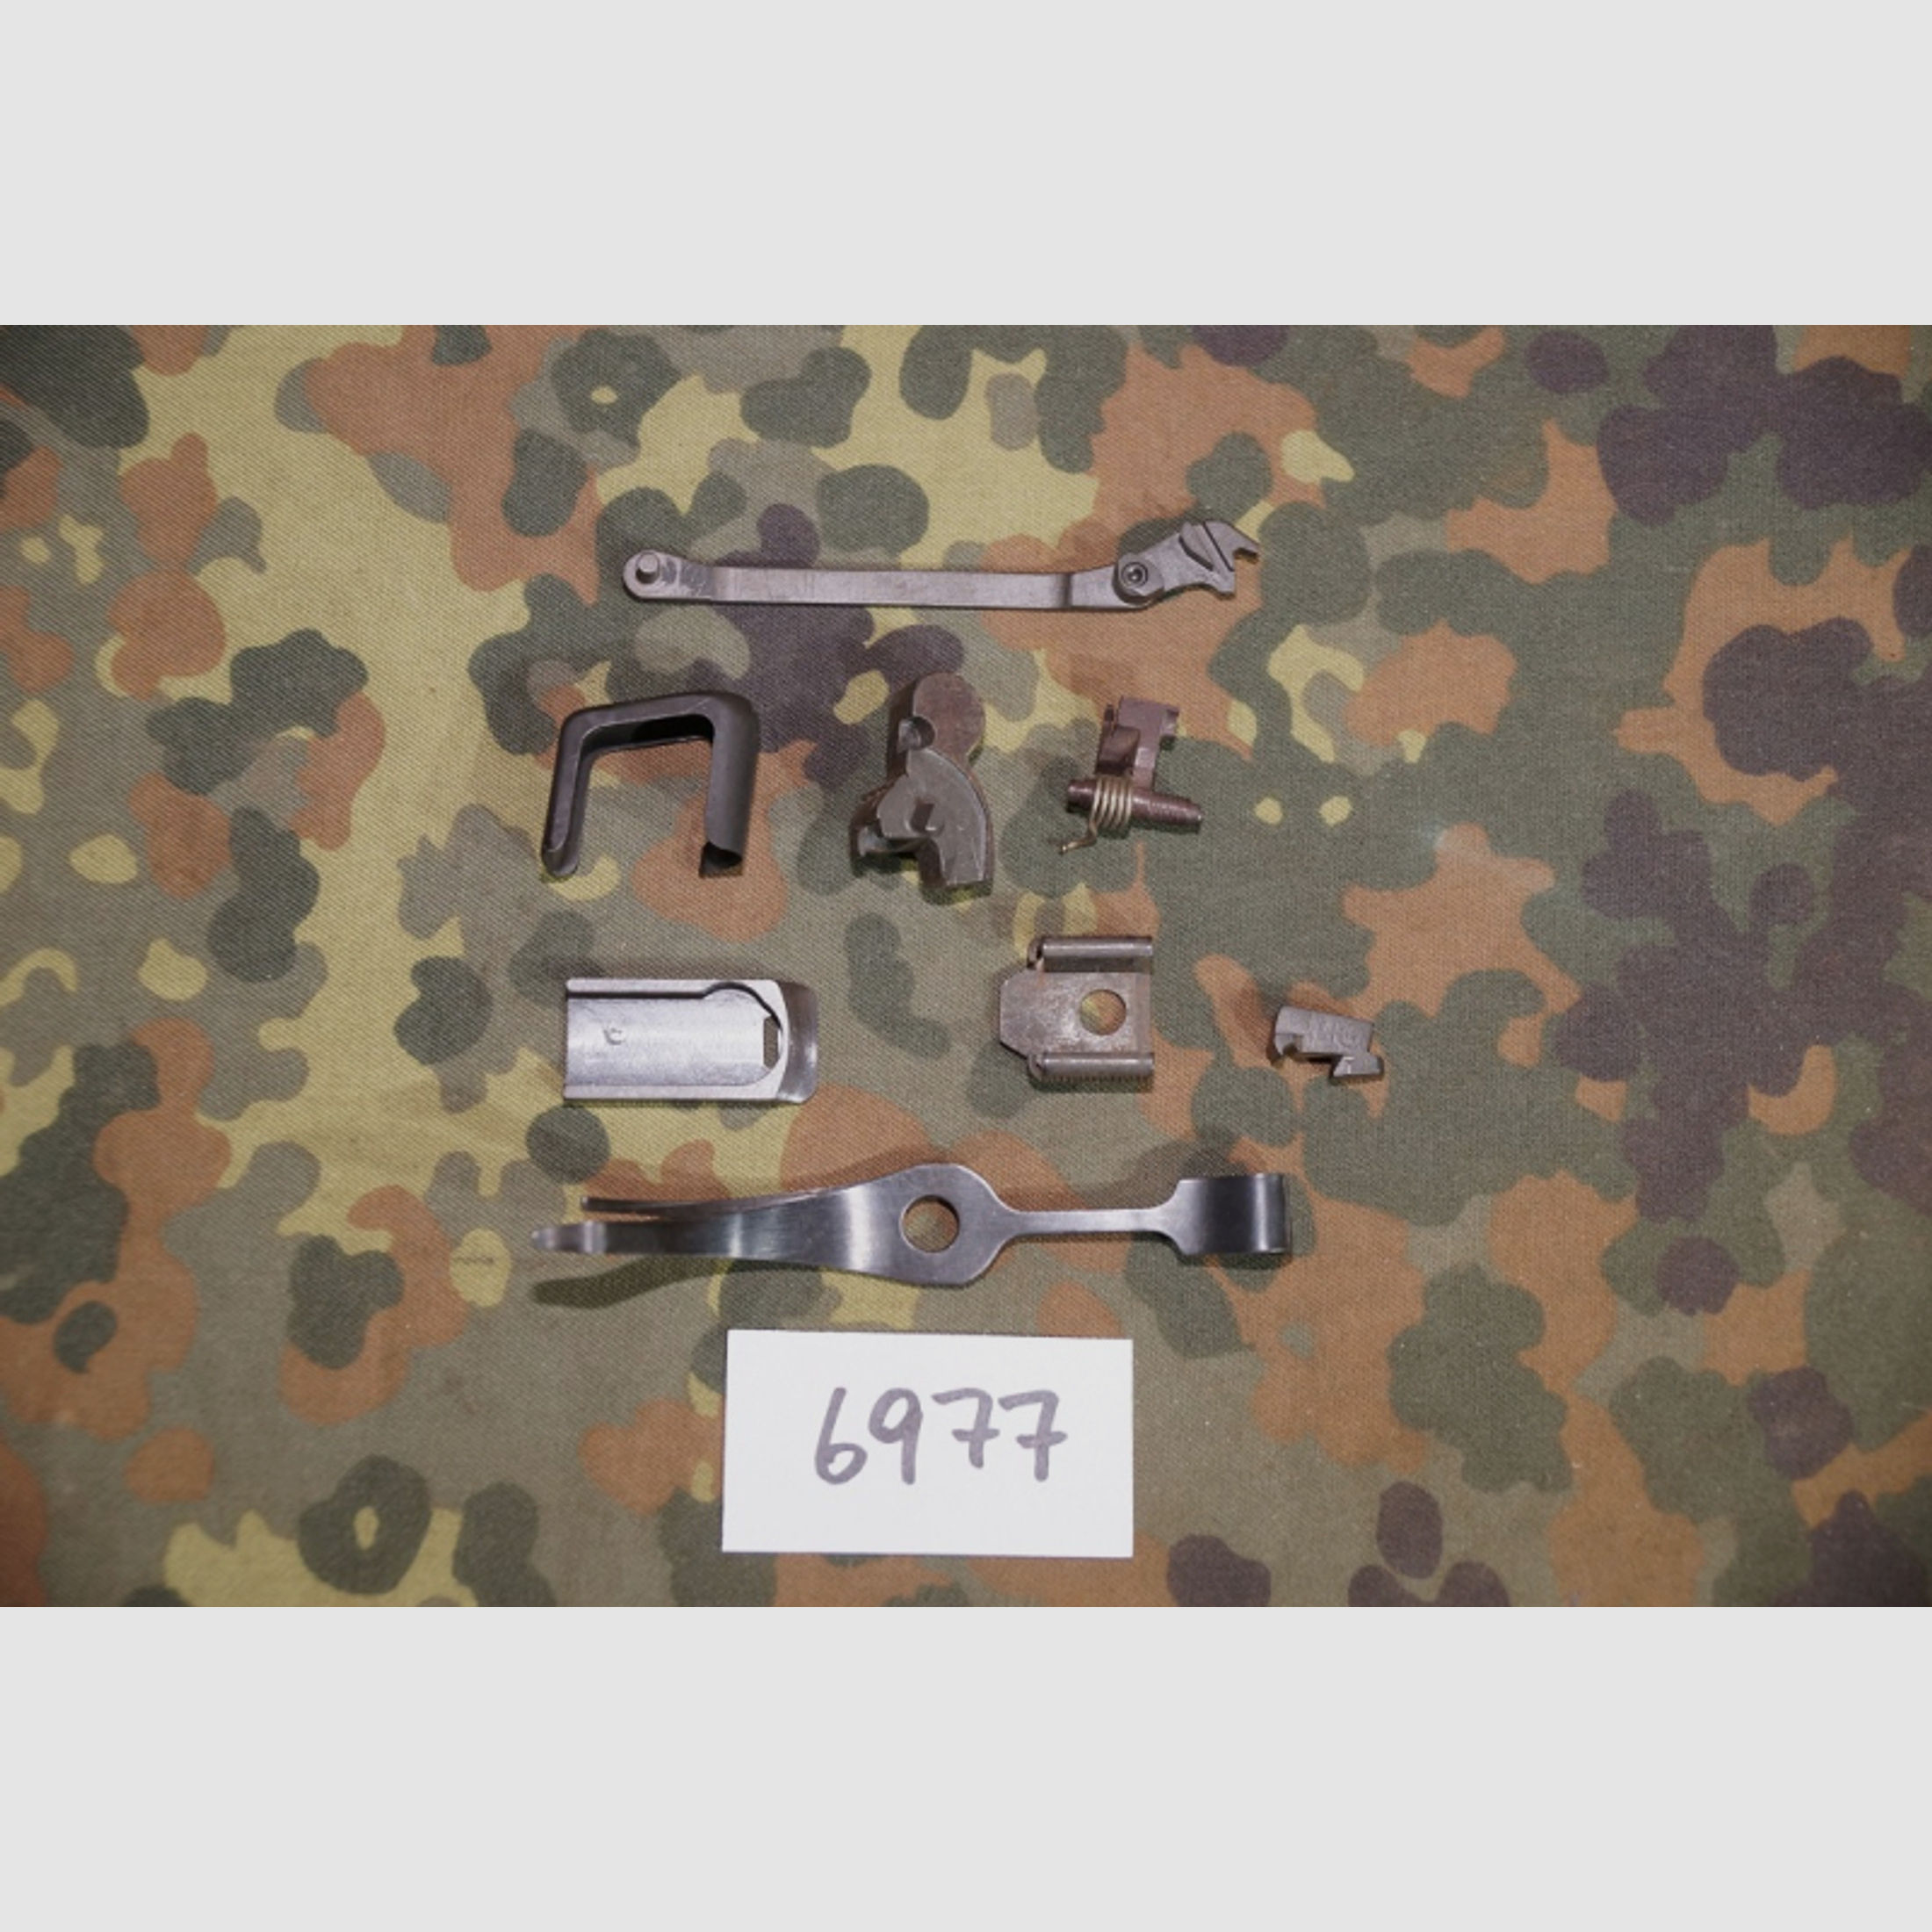 Makarov Ersatzteile Konvolut unbenutzte Pistolen Teile Ex-NVA DDR Sammlung (6977)